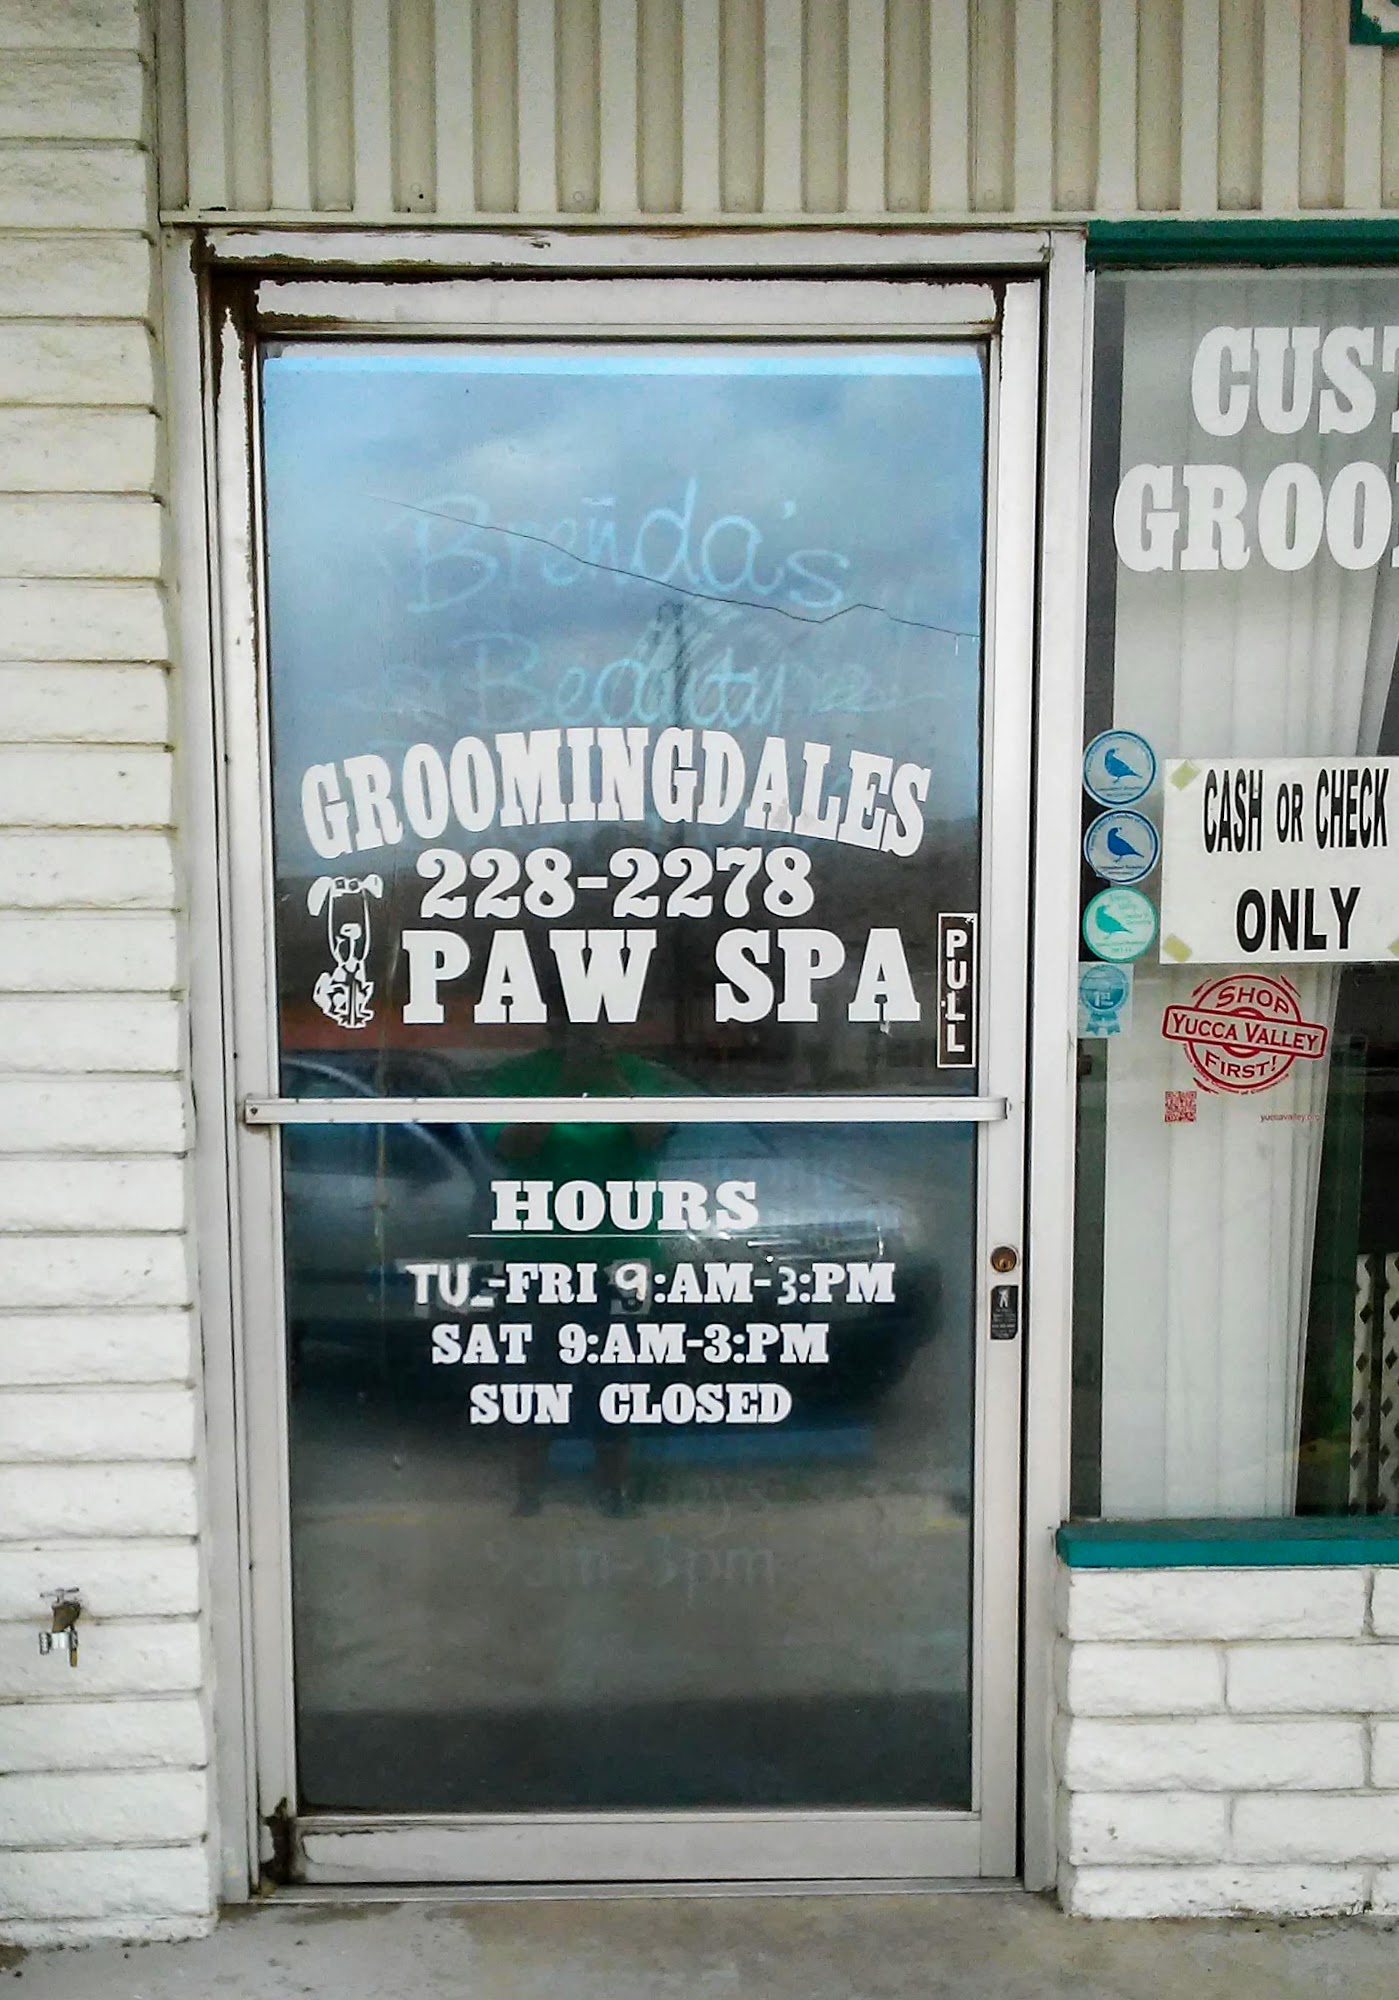 Groomingdales Paw Spa